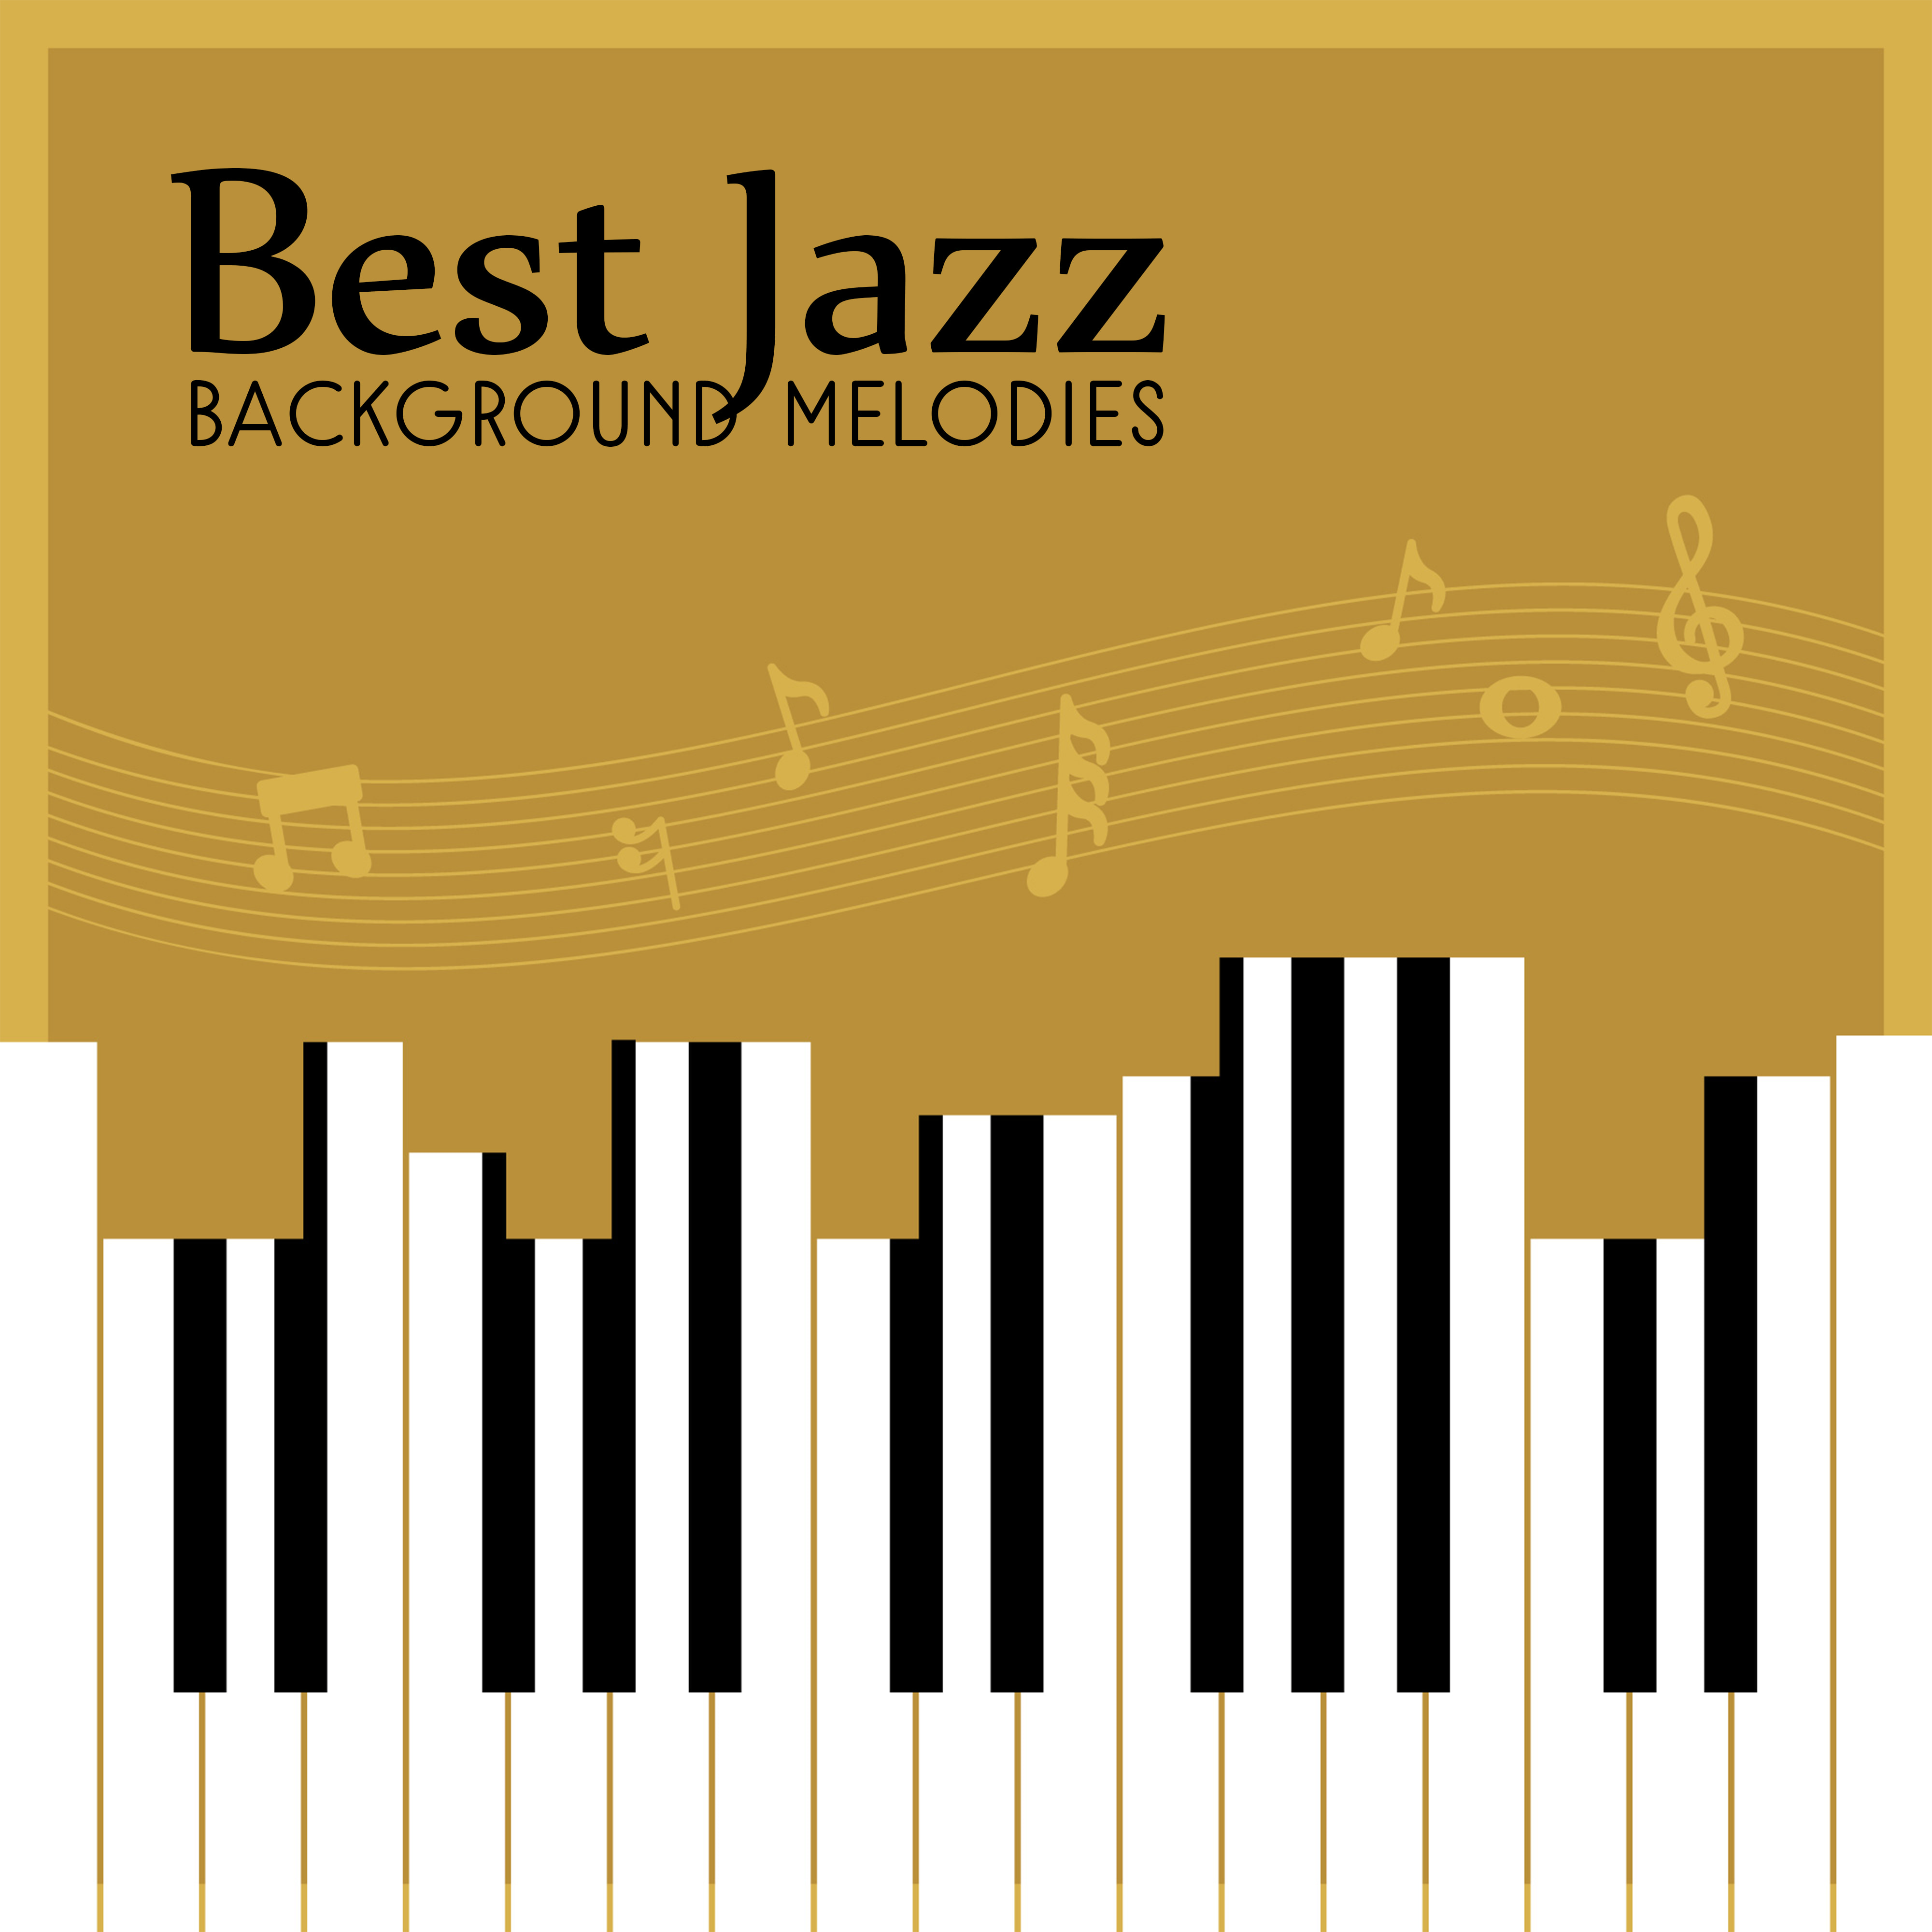 Best Jazz Background Melodies